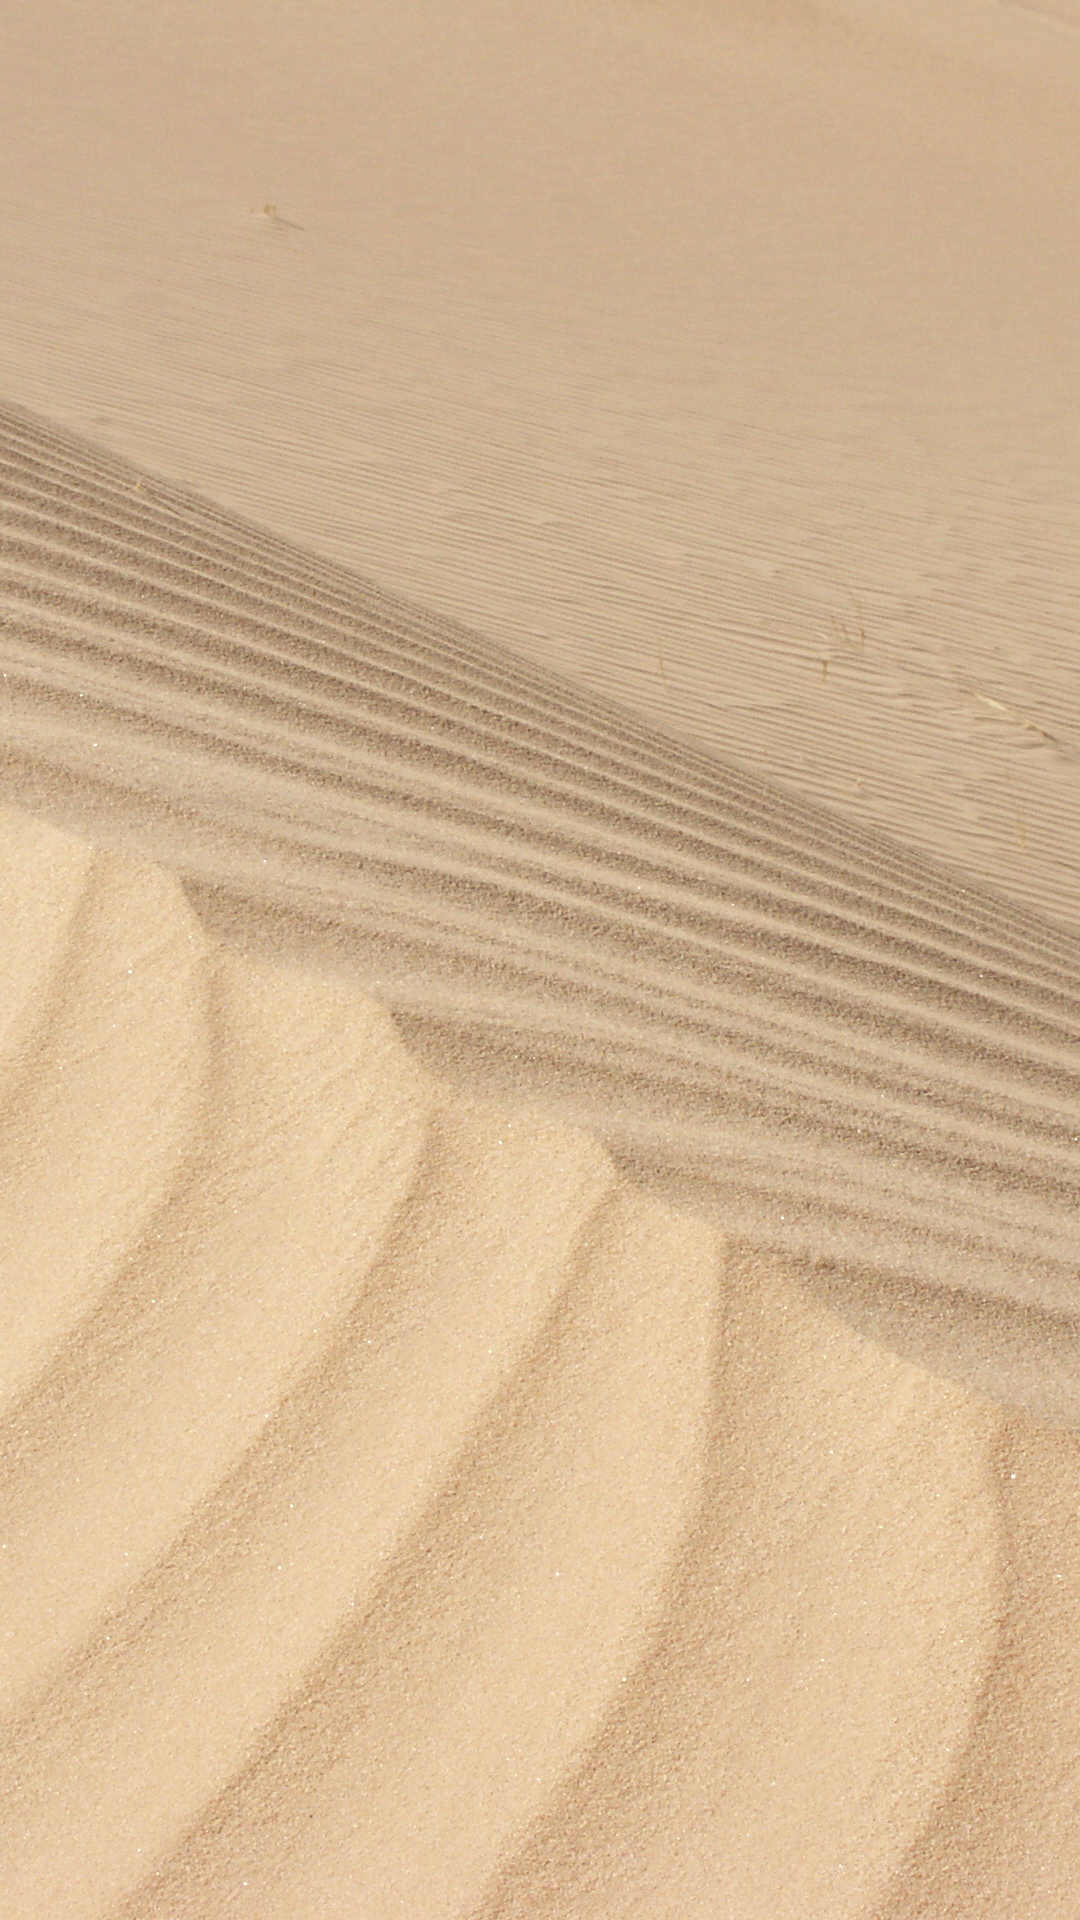 Sand dunes - Algeria